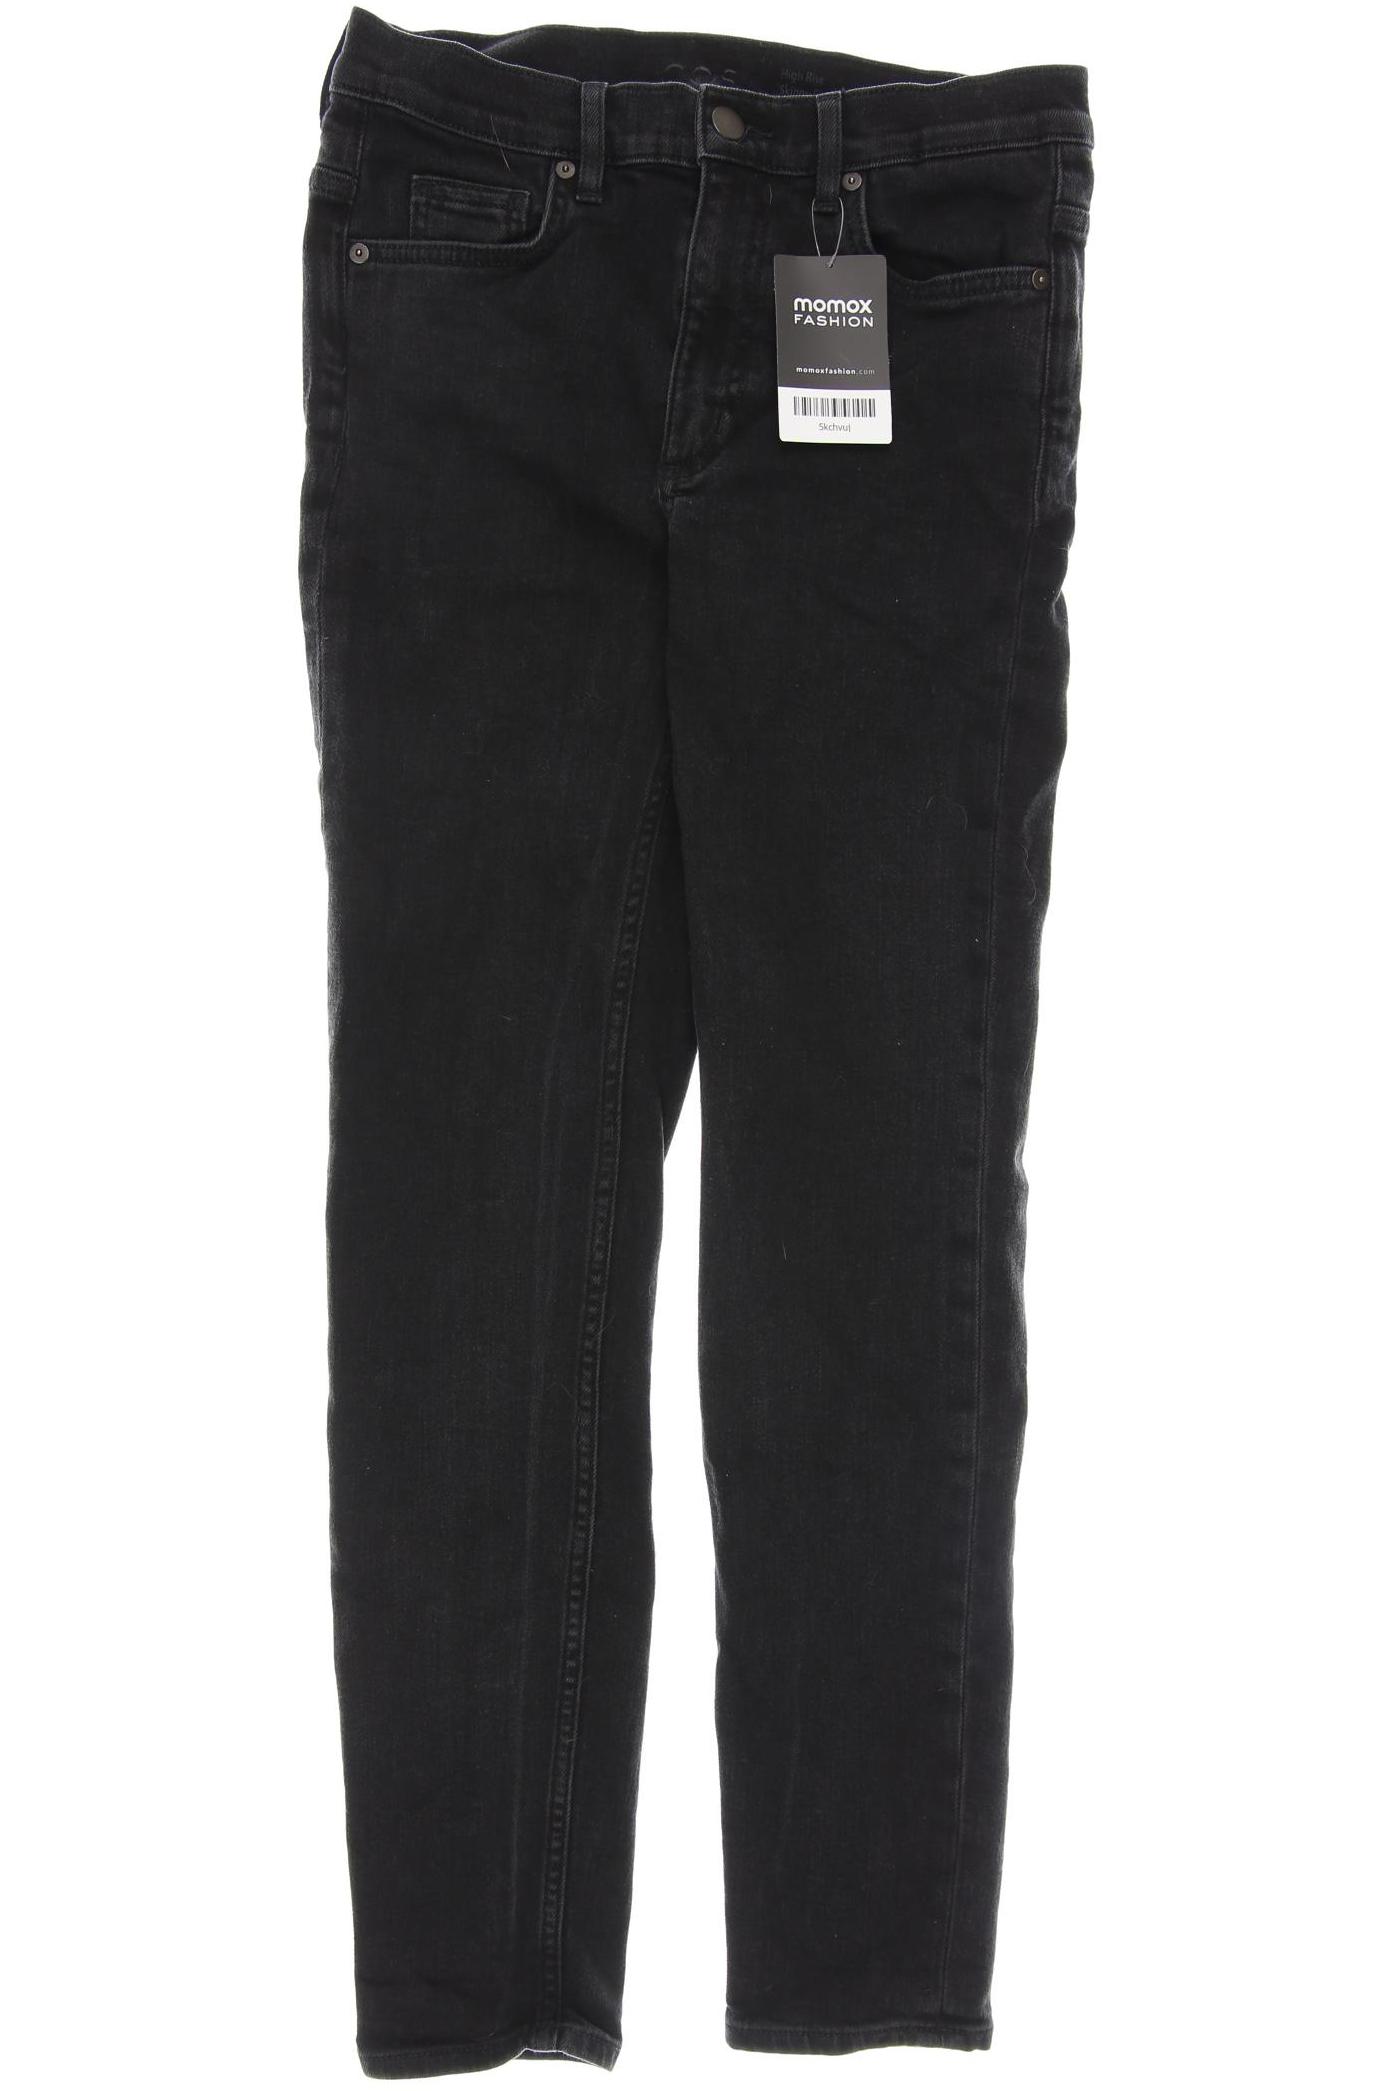 COS Damen Jeans, schwarz, Gr. 38 von COS